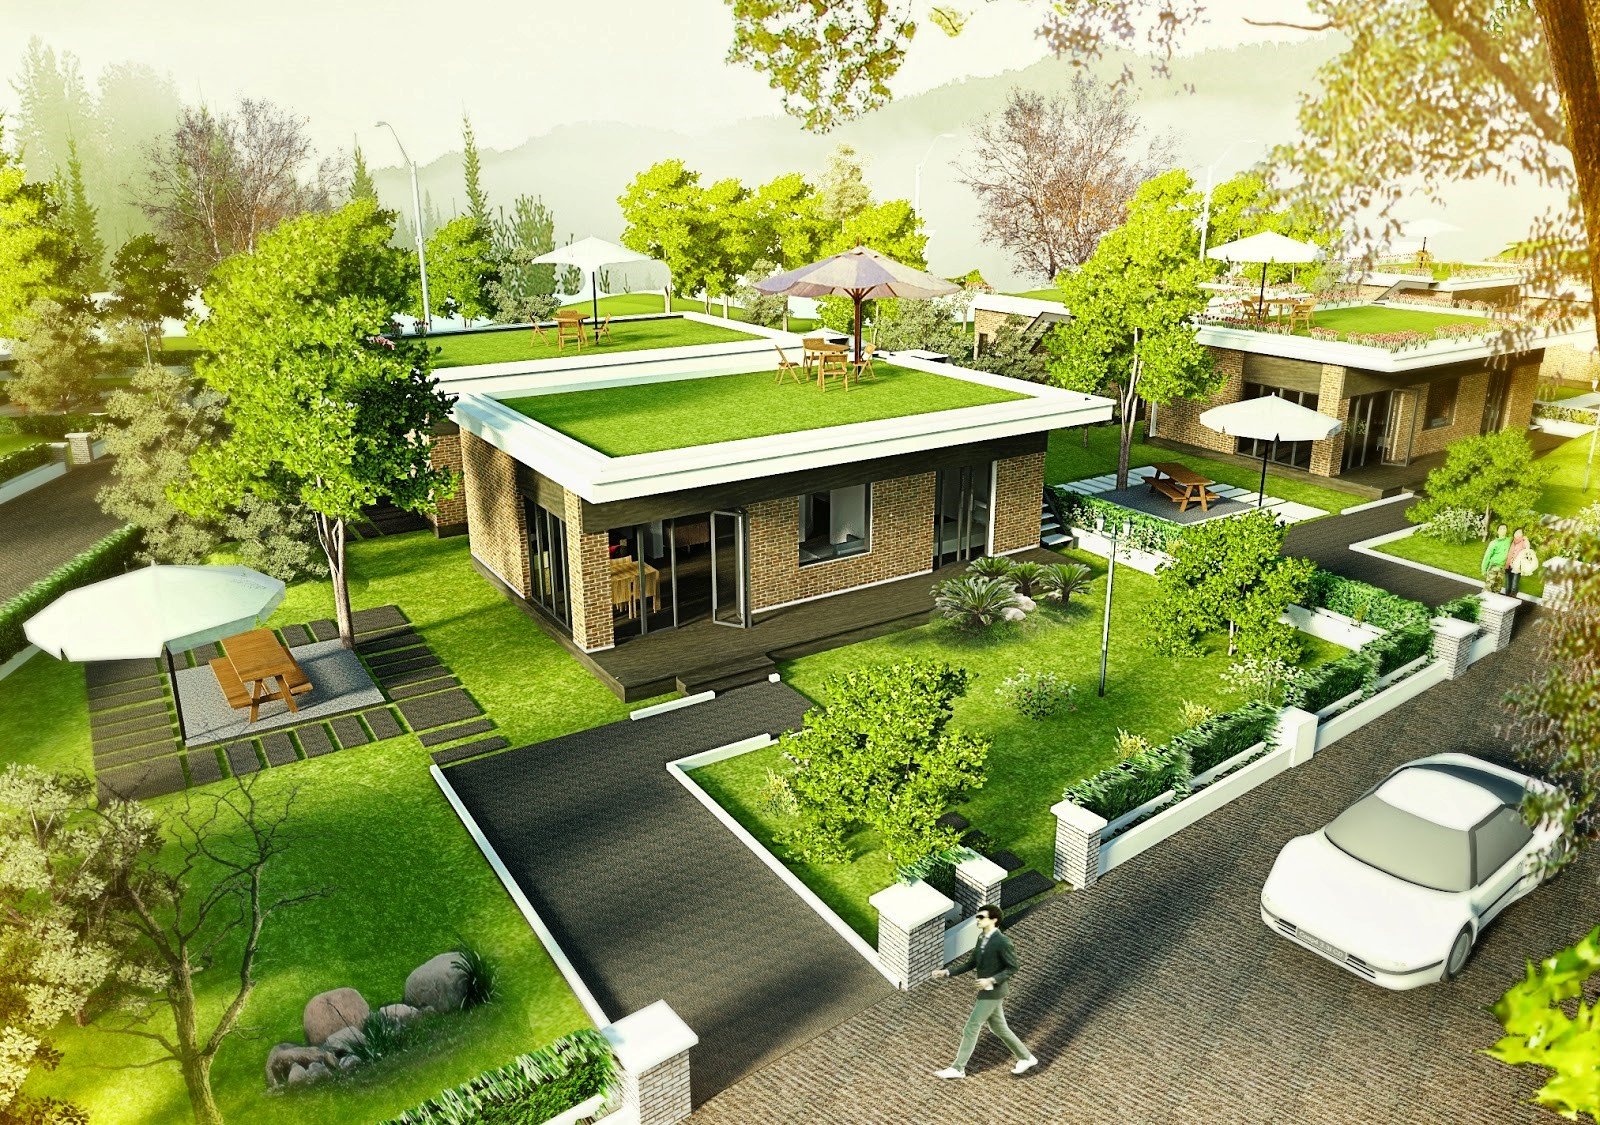 Thiết kế nhà với không gian xanh đang là xu hướng hiện nay